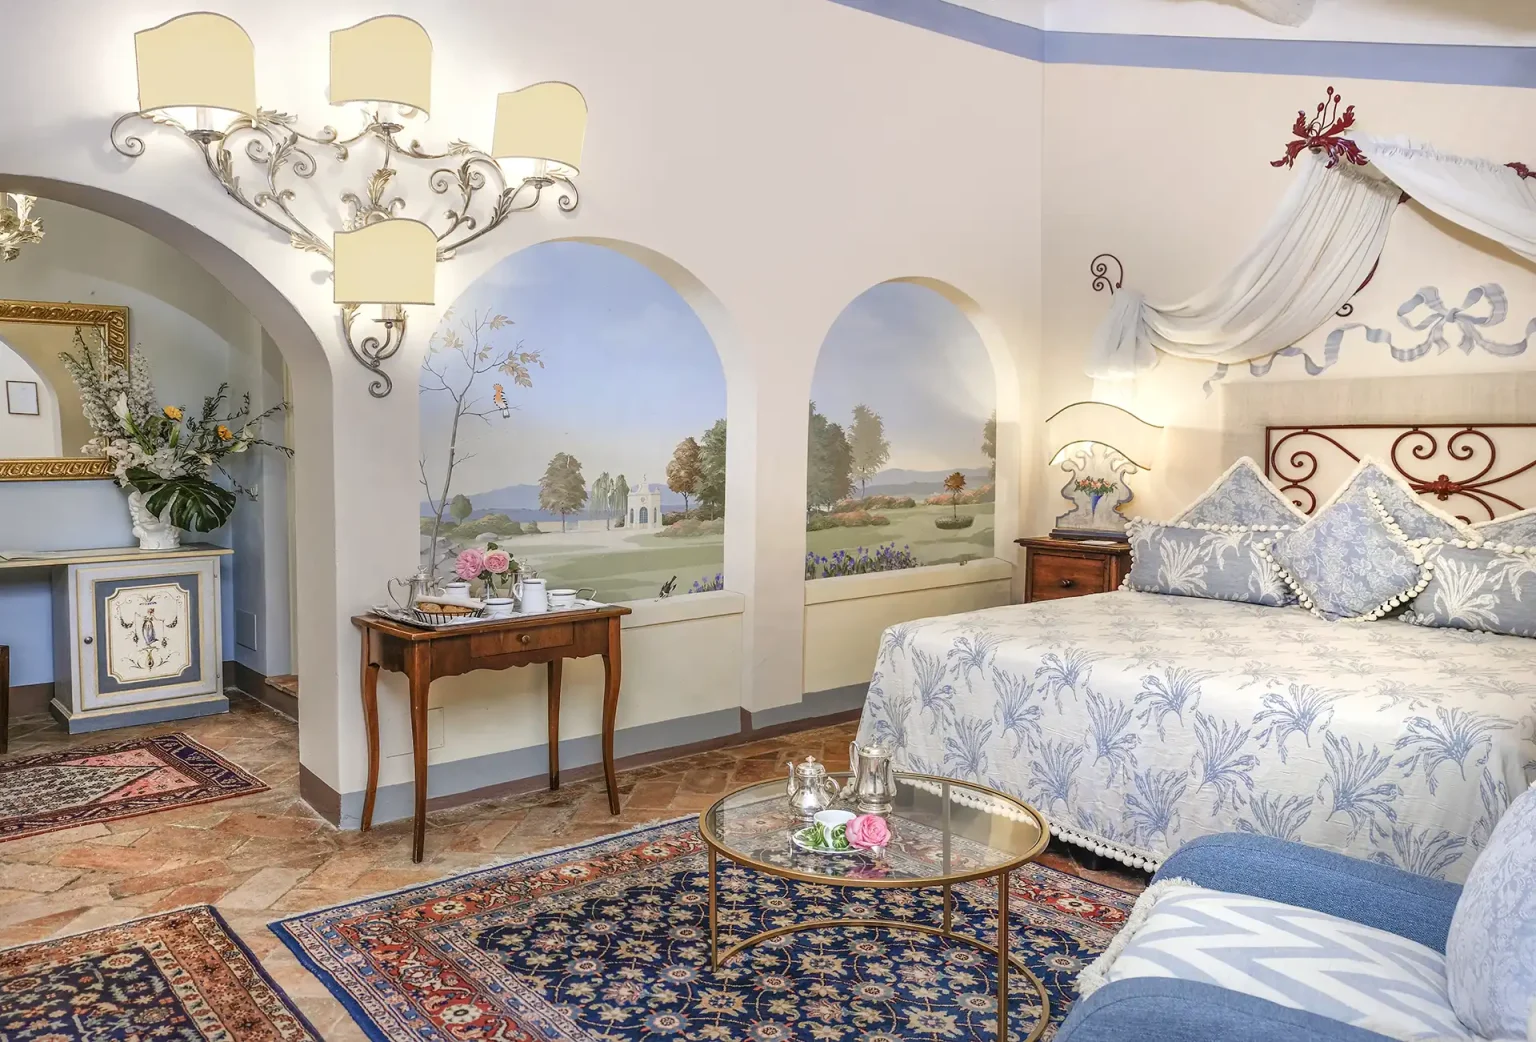 Camera da letto deluxe con affreschi